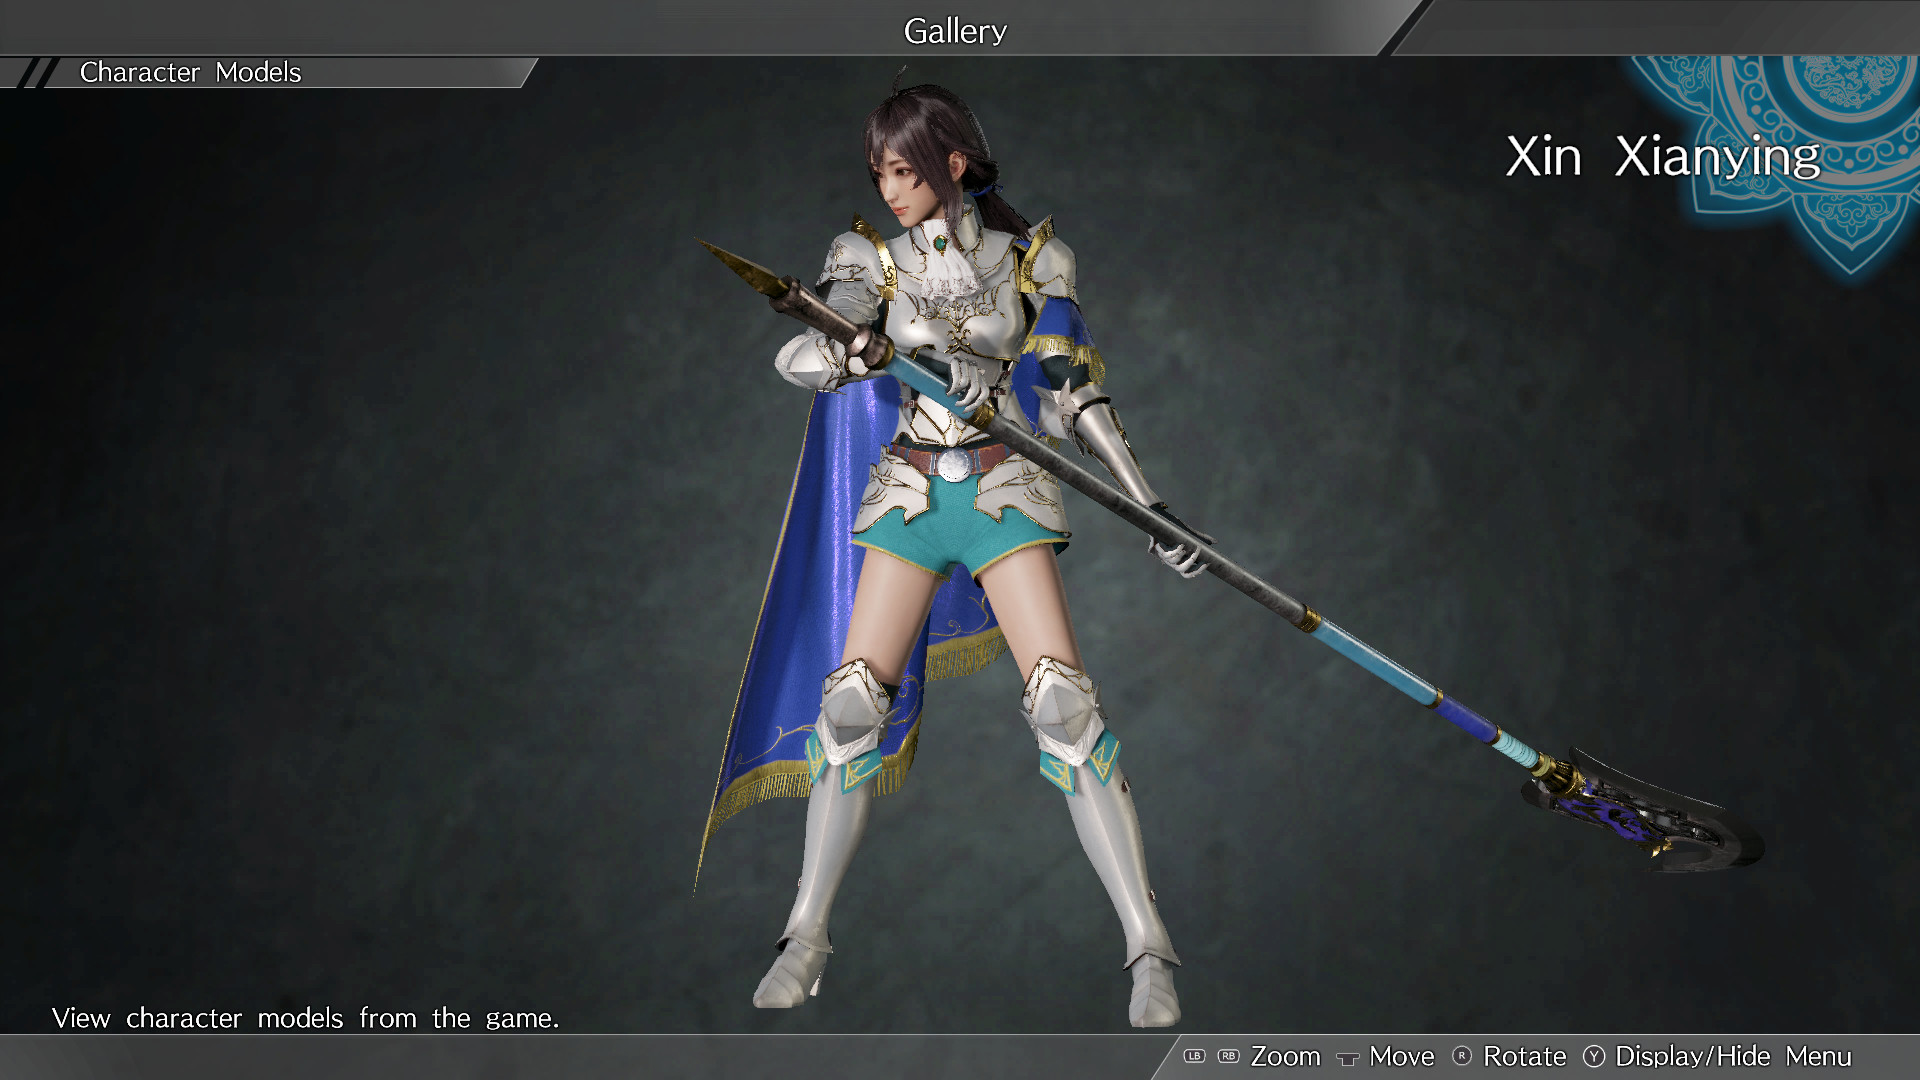 DYNASTY WARRIORS 9: Xin Xianying "Knight Costume" / 辛憲英「騎士風コスチューム」 Featured Screenshot #1